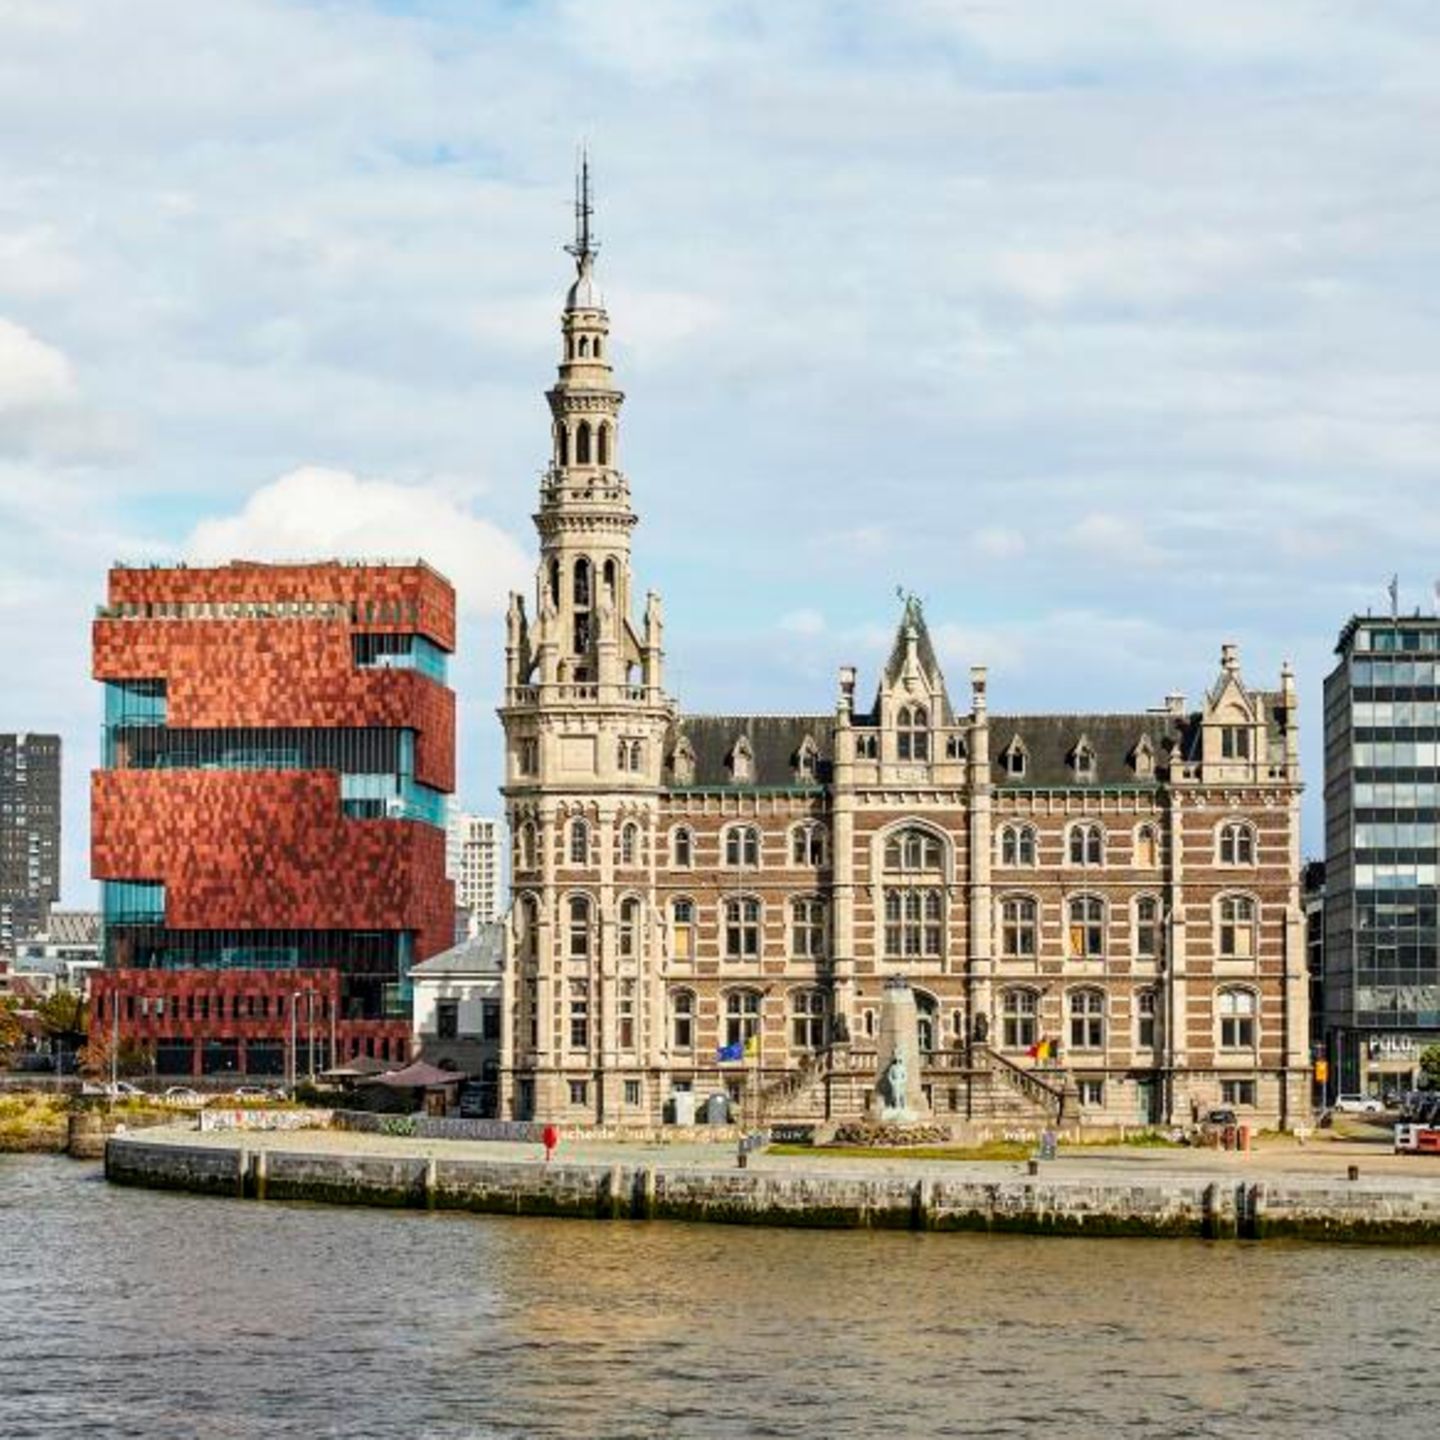 Zwischen den zwei Welten von Antwerpenliegen nur zehn Minuten Fußweg. In der Altstadt direkt an der Schelde steht die 400-jährige Sint-Pauluskerk. Innen geben sich die Großen desflämischen Barock ein Stelldichein: Rubens, van Dyck und Jordaens. Beeindruckt von der Kunst und der ganzen sakralen Pracht laufe ich einmal um die Ecke und lande am Museum aan de Stroom, kurz MAS. Antwerpen hat den zweitgrößten Hafen Europas, und dieser hochgelobte Bau im Hafenviertel Eilandje feiert die Weltoffenheit der Stadt mit Ausstellungen und viel Platz zum Schauen. Zehn Stockwerke türmen sich hier aufeinander, die Fensterfronten so versetzt, dass jede Etage eine neue Perspektive eröffnet.